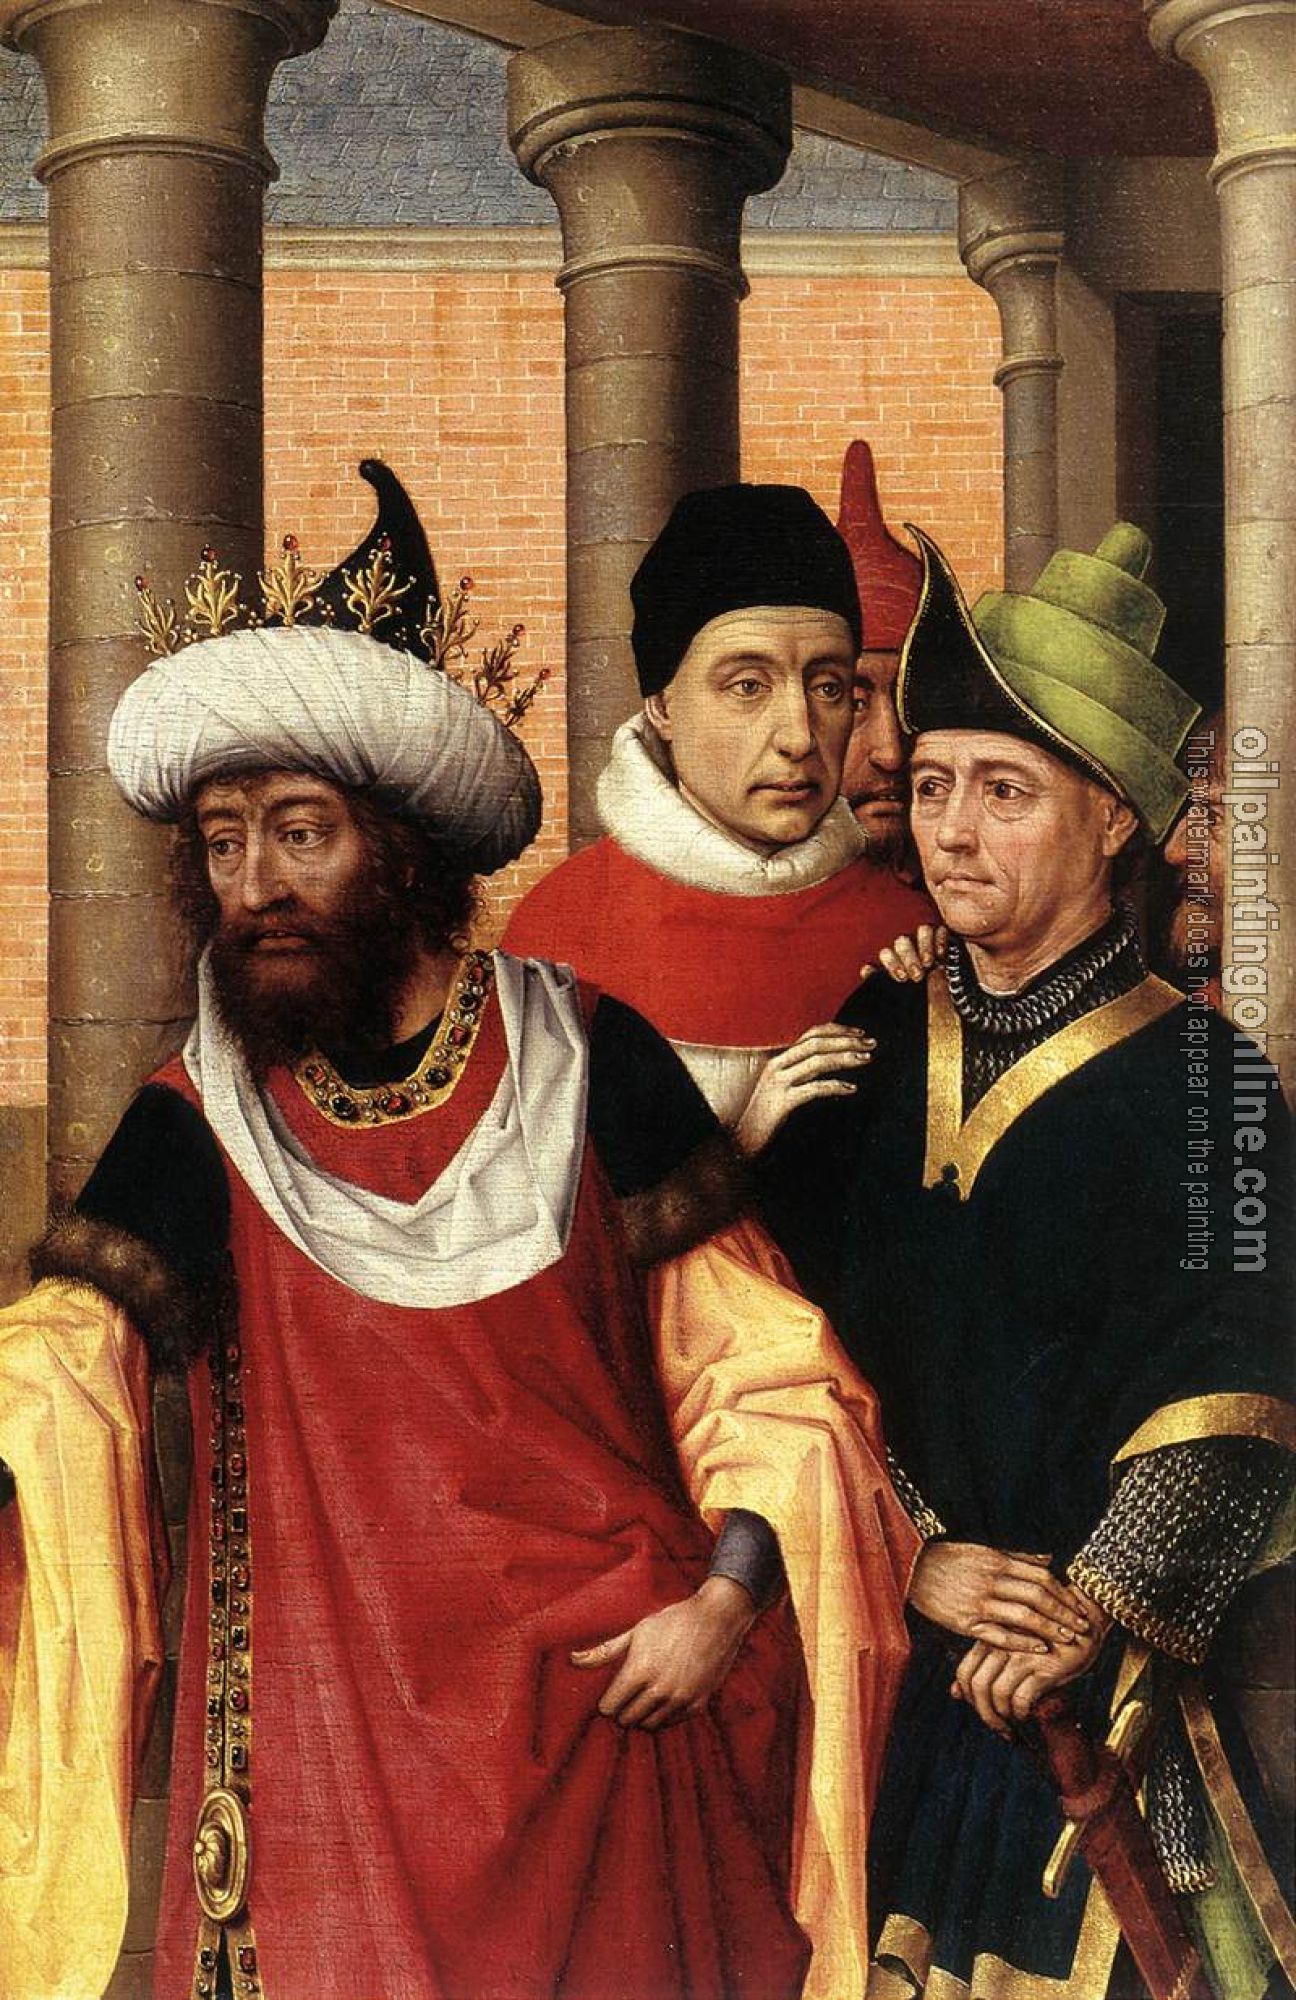 Weyden, Rogier van der - Group of Men